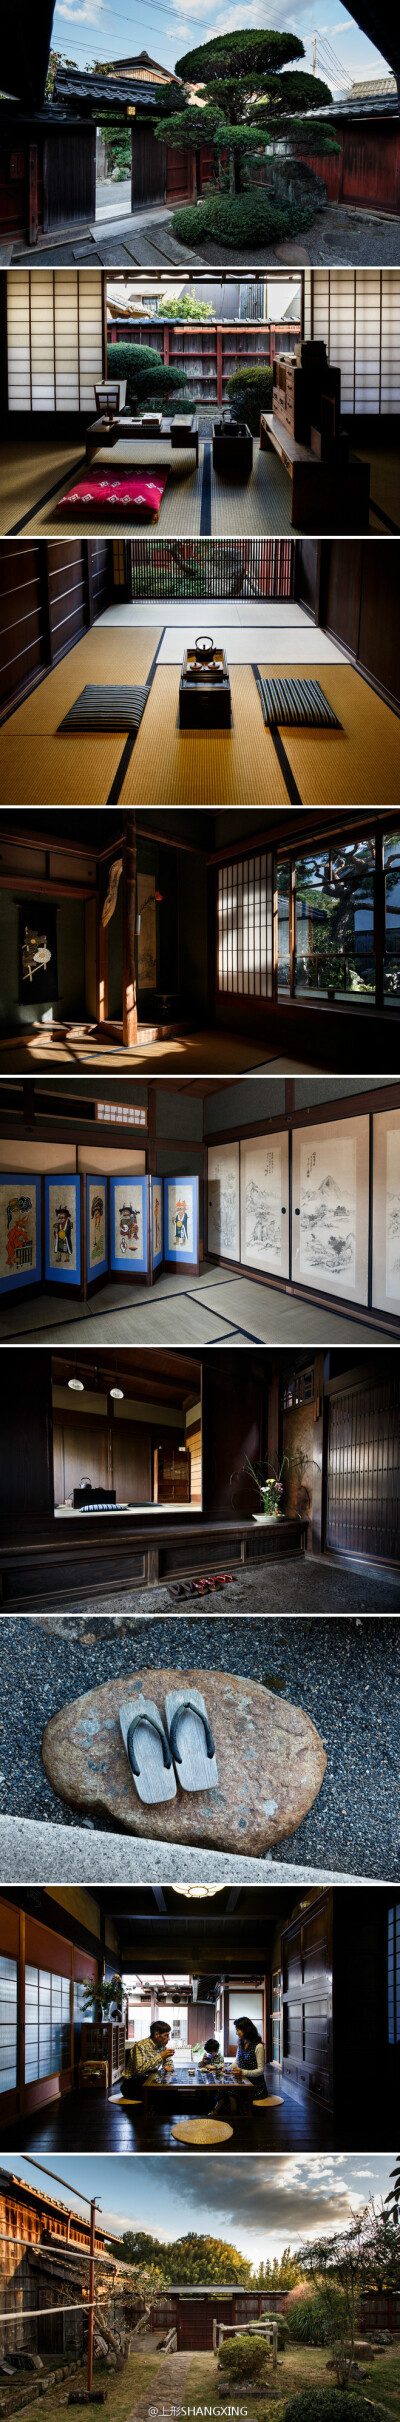 日本武士规格的传统宅院 |Austin Moore在刚发现这座日式宅院时就知道自己可以在这里安家。这座宅院有150年历史，是为一名富有的清酒商人建造的，位于古都京都附近的历史小城日野(Hino)。